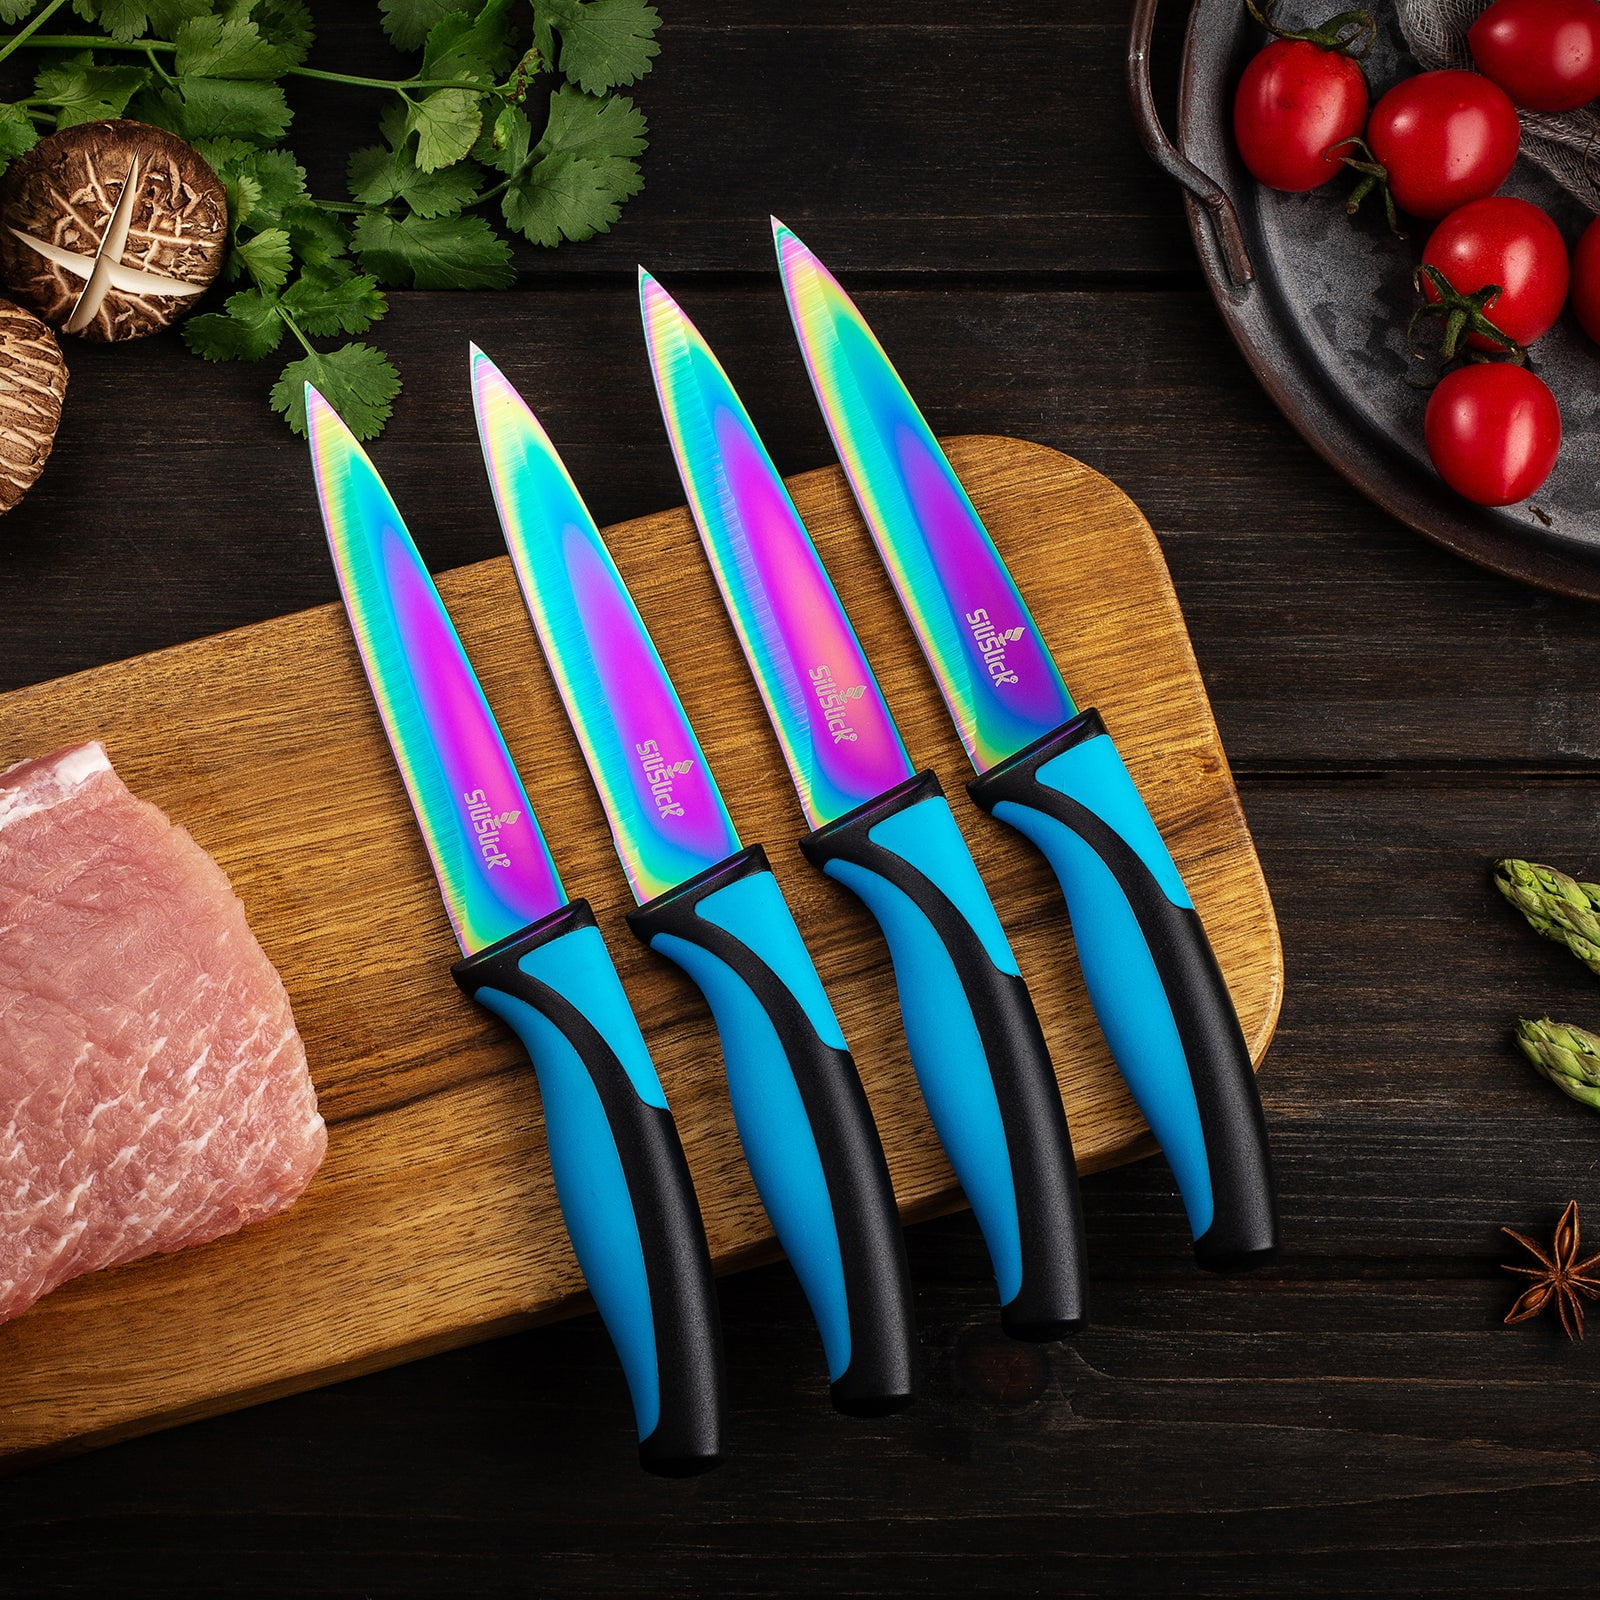 SiliSlick Stainless Steel Steak Knife Red Handle Set of 4 - Titanium Coated  Rainbow, 1 unit - King Soopers